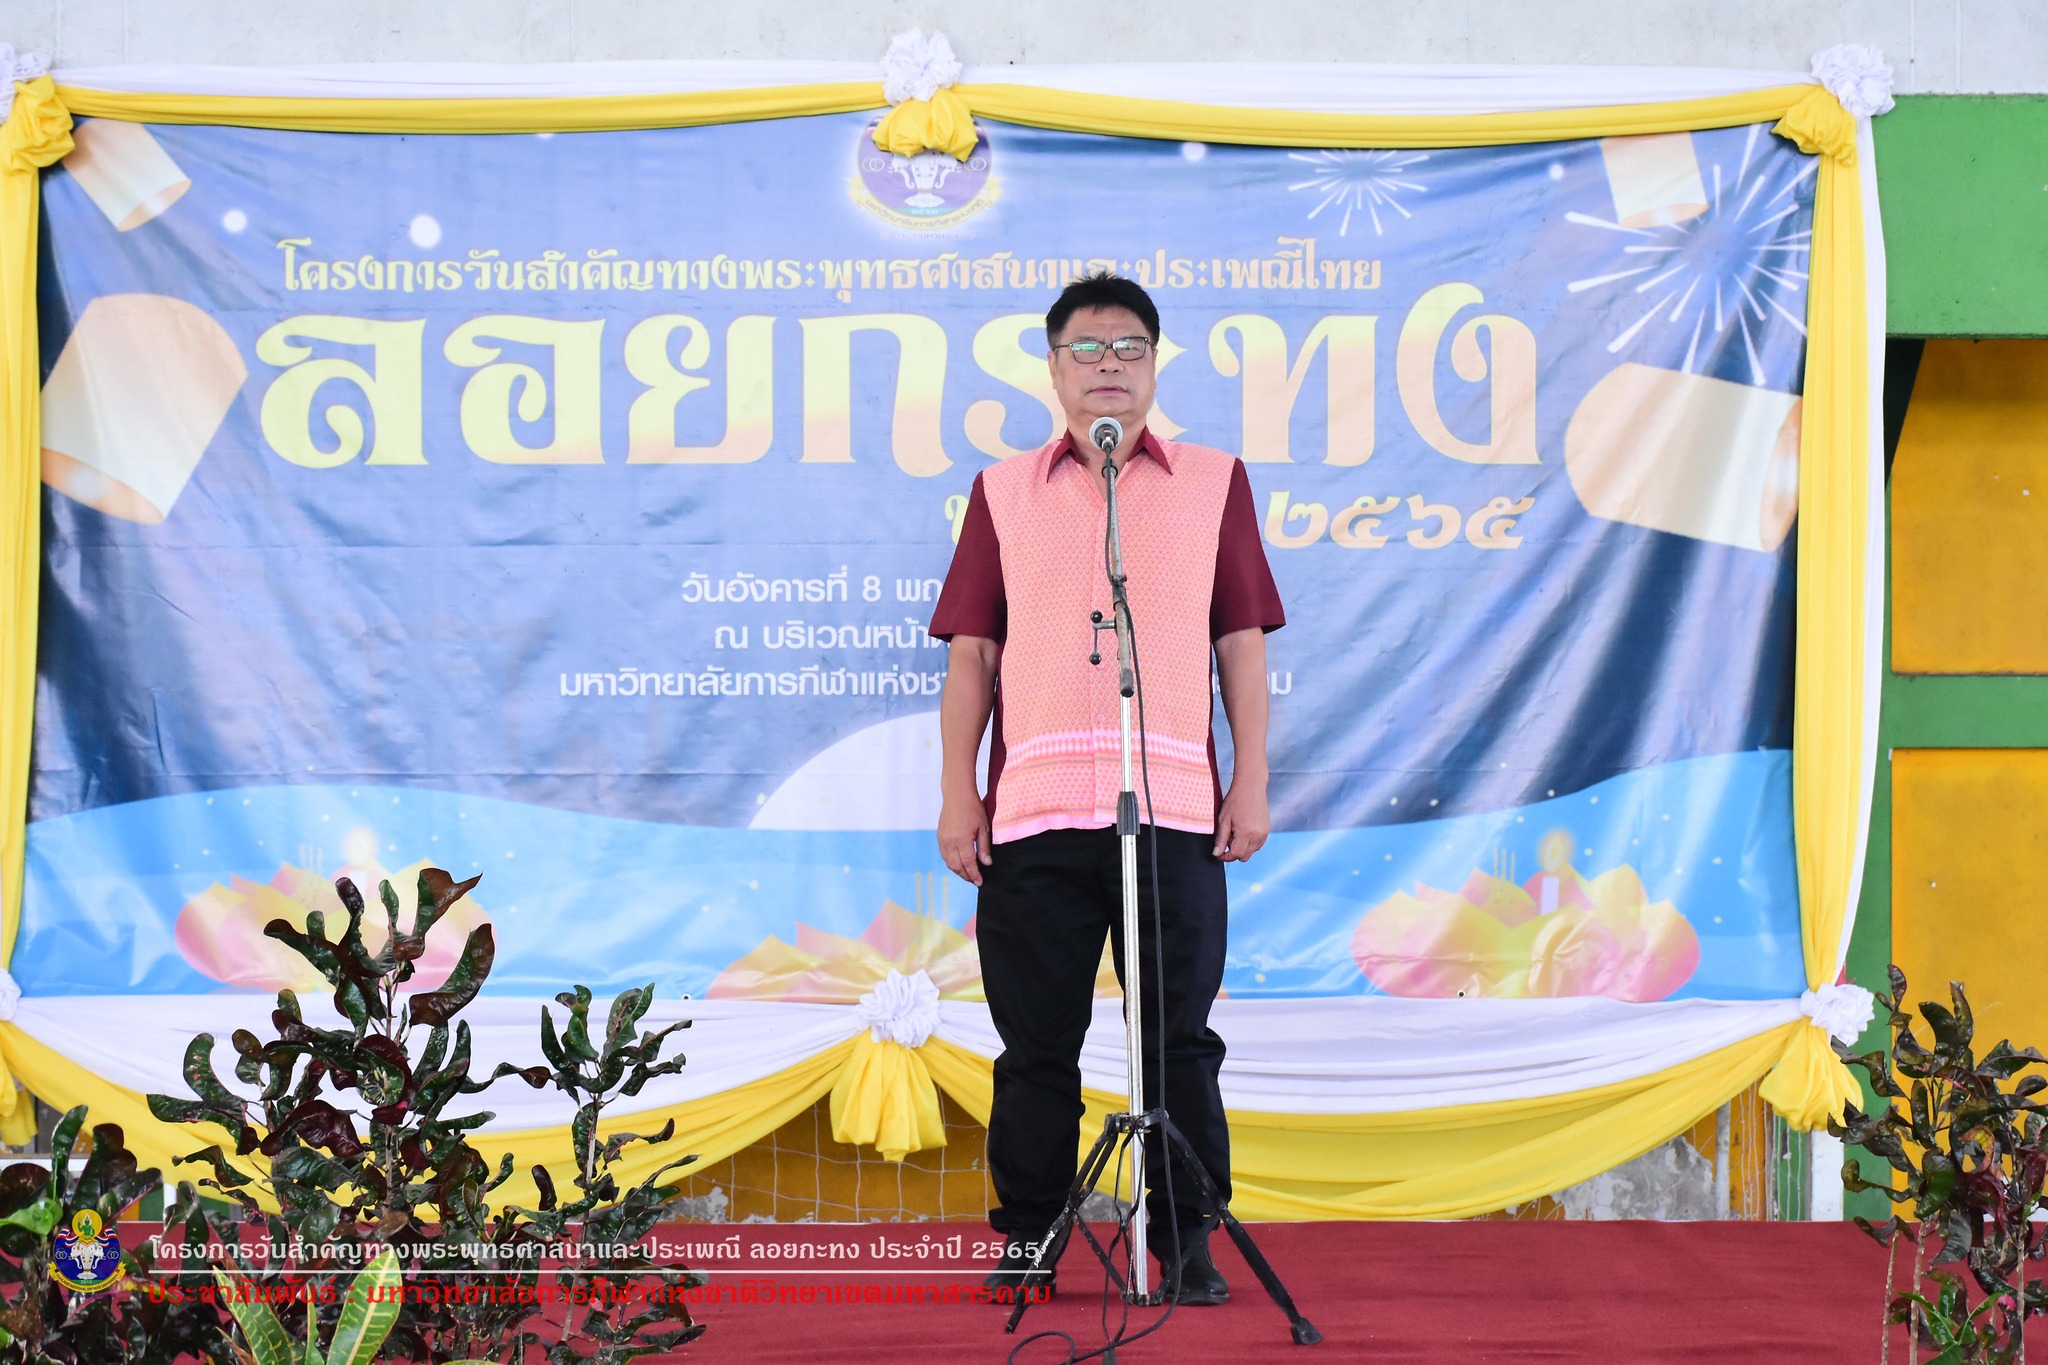 โครงการวันสำคัญทางพระพุทธศาสนาและประเพณีไทย ลอยกระทง ประจำปี 2565